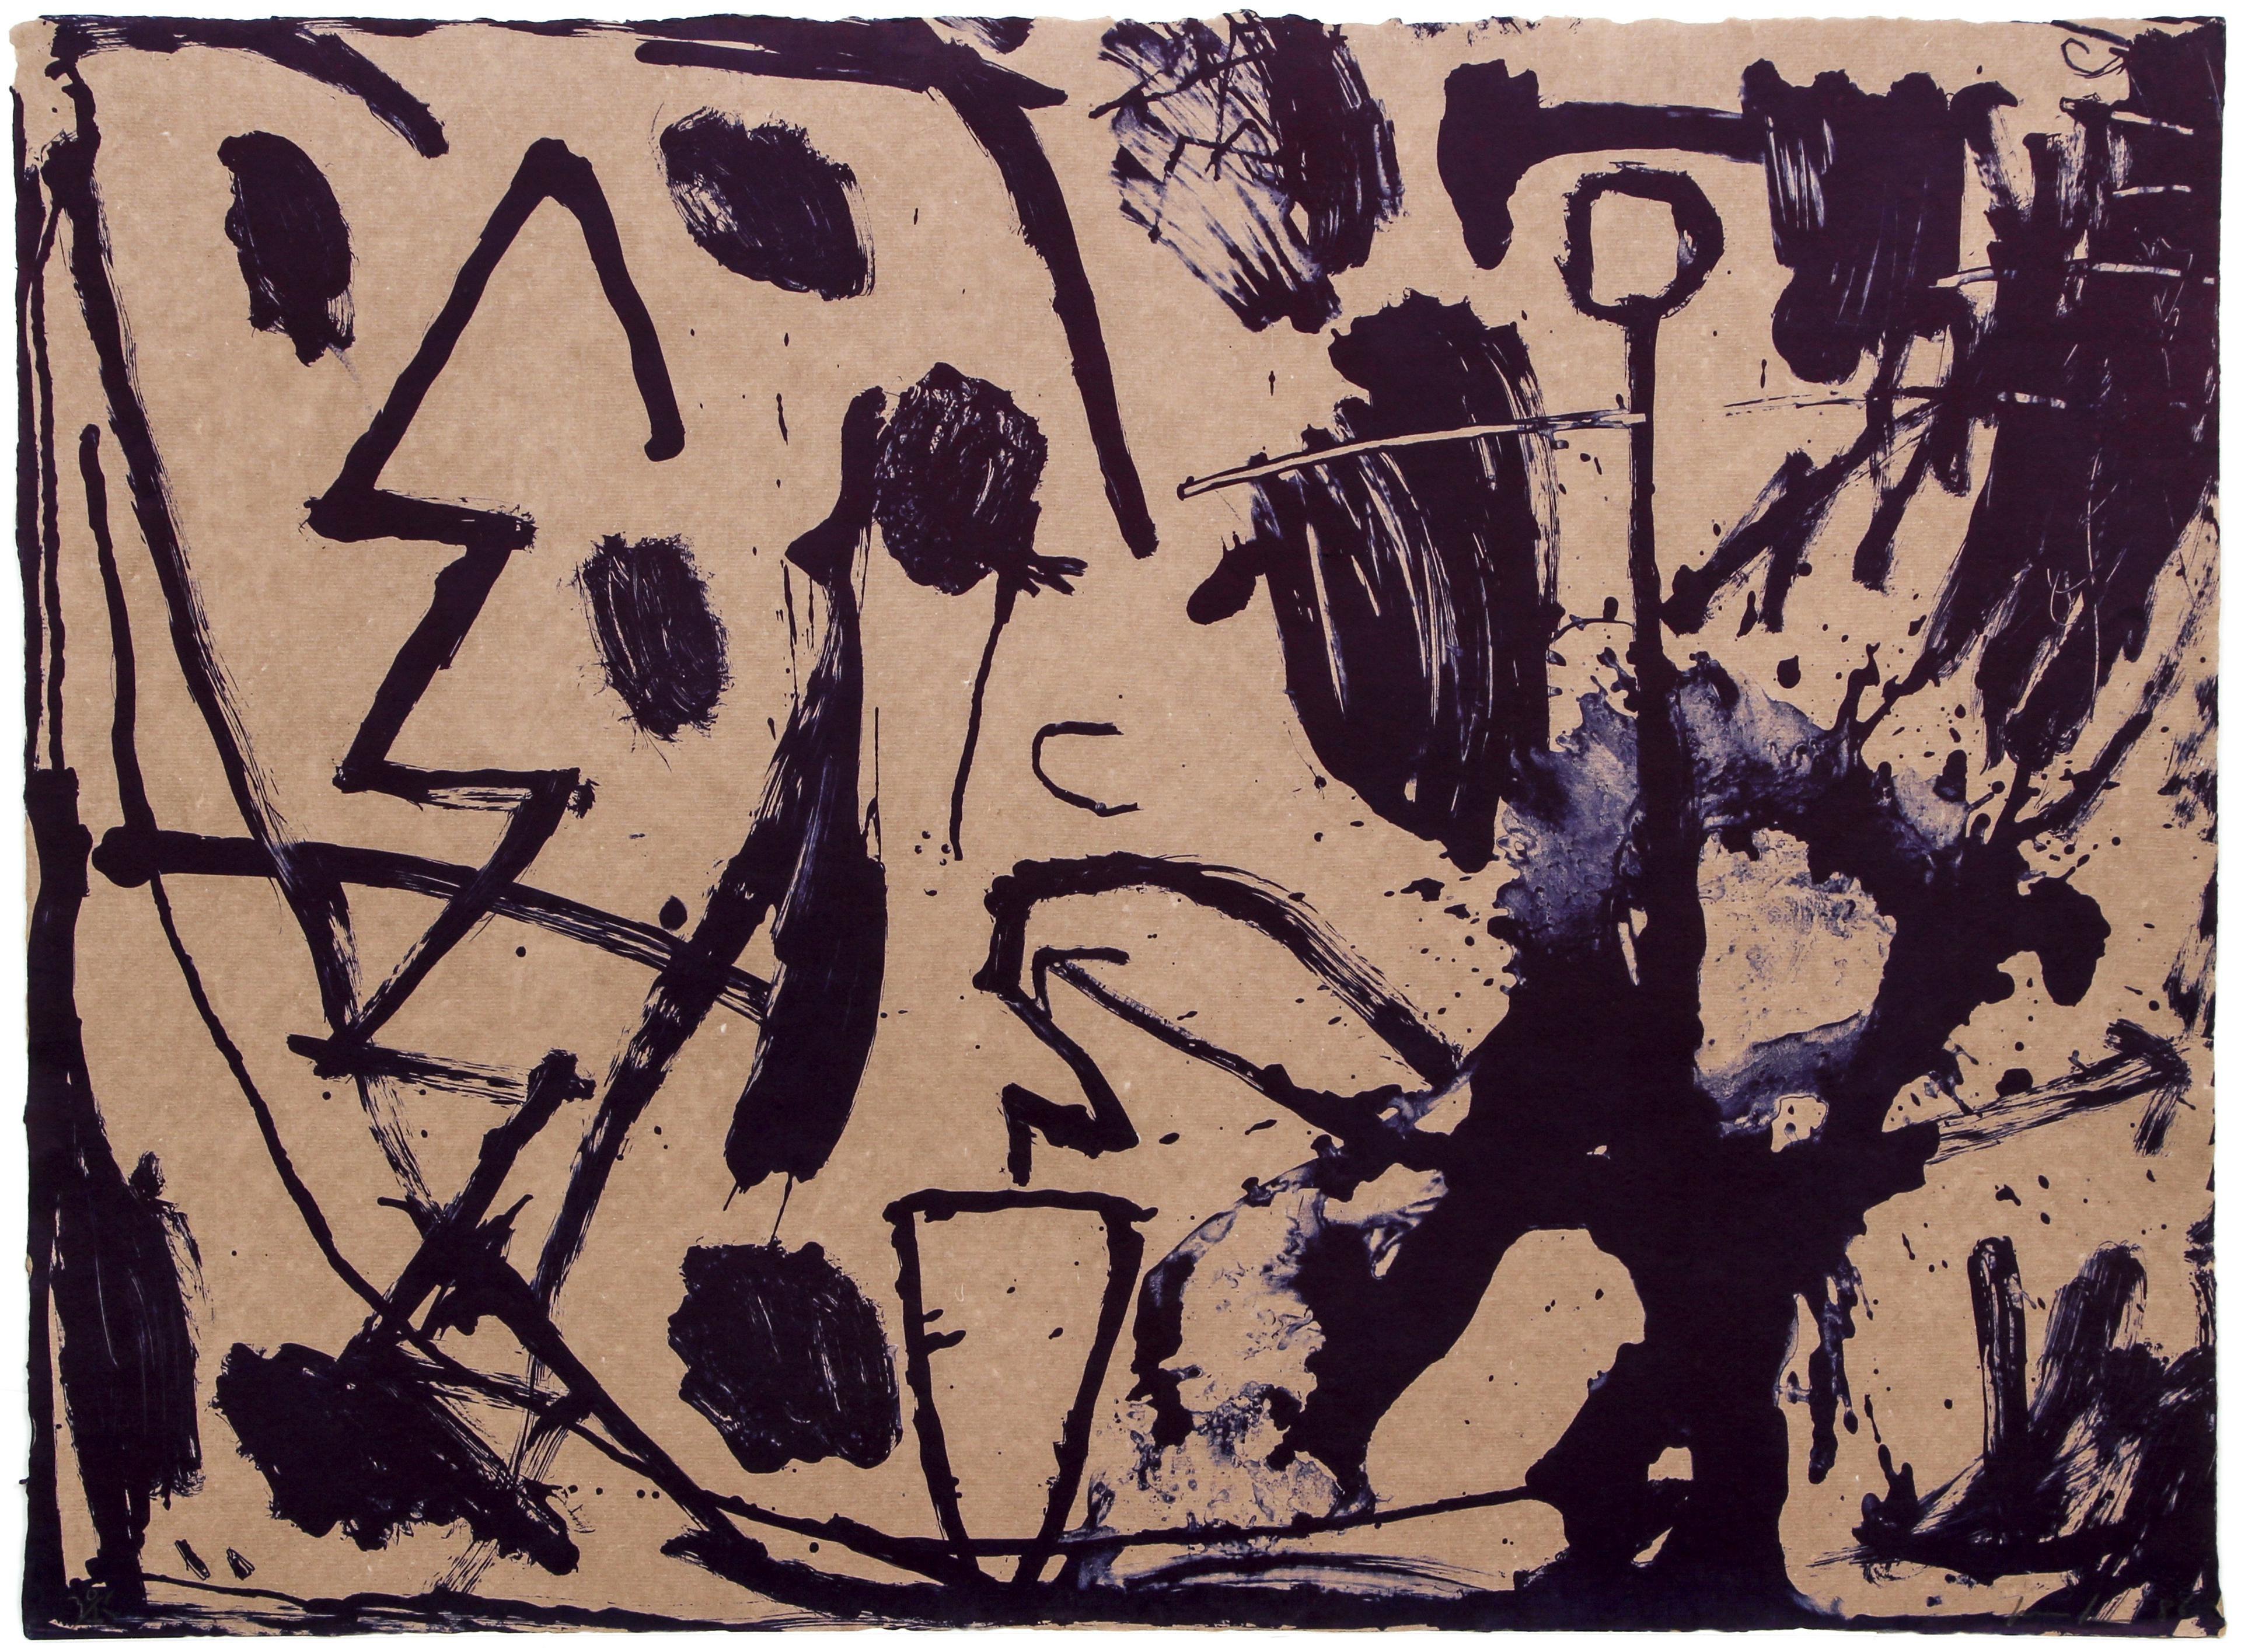 Artistics : James Brown, Américain (1951 - )
Titre : sans titre du portfolio de Bill AT&T Jones
Année : 1986
Médium : Lithographie, signée et numérotée au crayon
Edition : 85
Taille : 22 x 29.5 in. (55.88 x 74.93 cm)